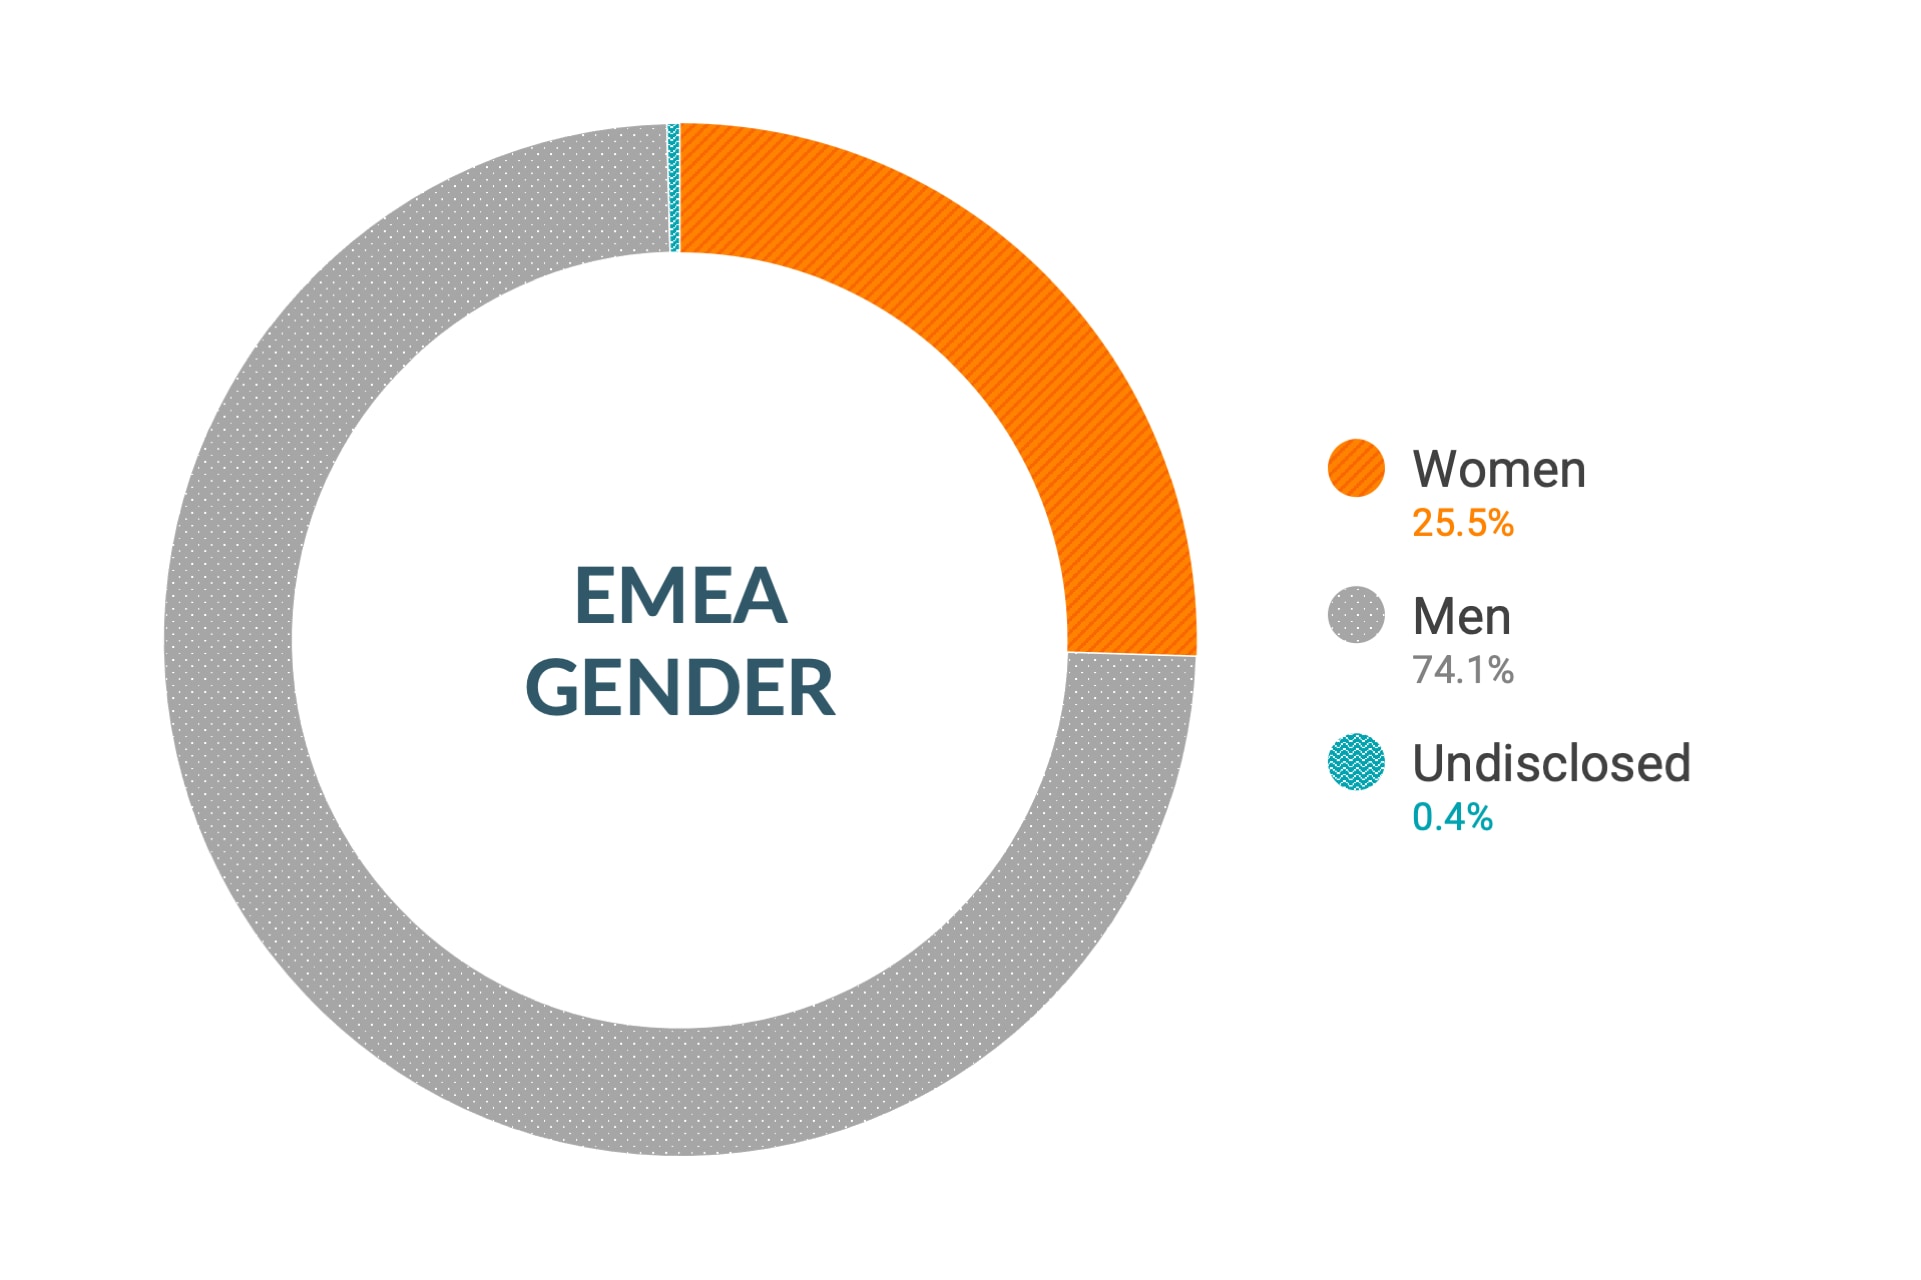 Cloudera のダイバーシティとインクルージョンデータ (欧州、中東、アフリカの性別比): 女性26.8%、男性72.8%、回答なし0.4%